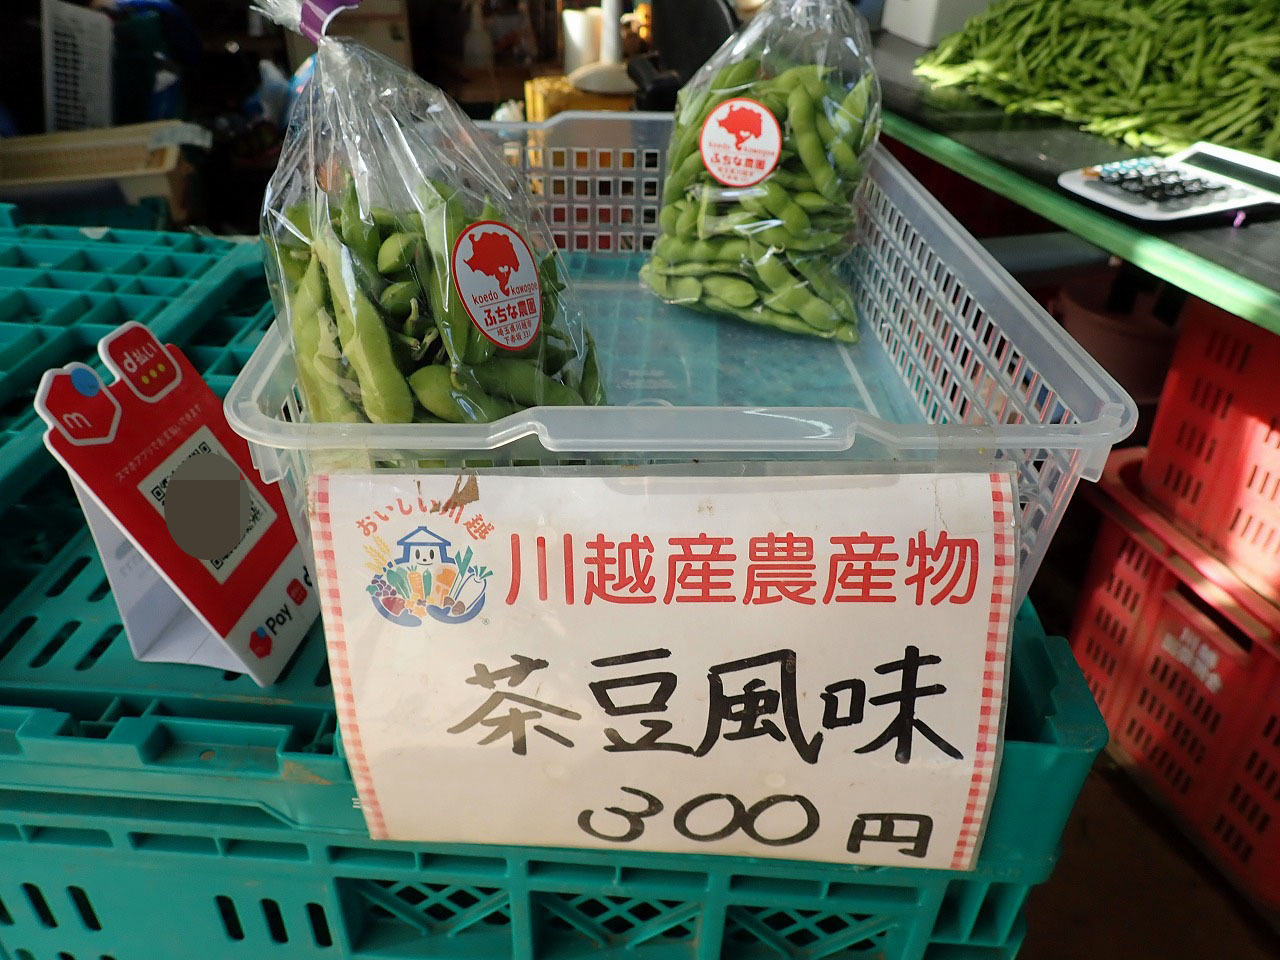 枝豆はきれいに包装された状態で販売しています